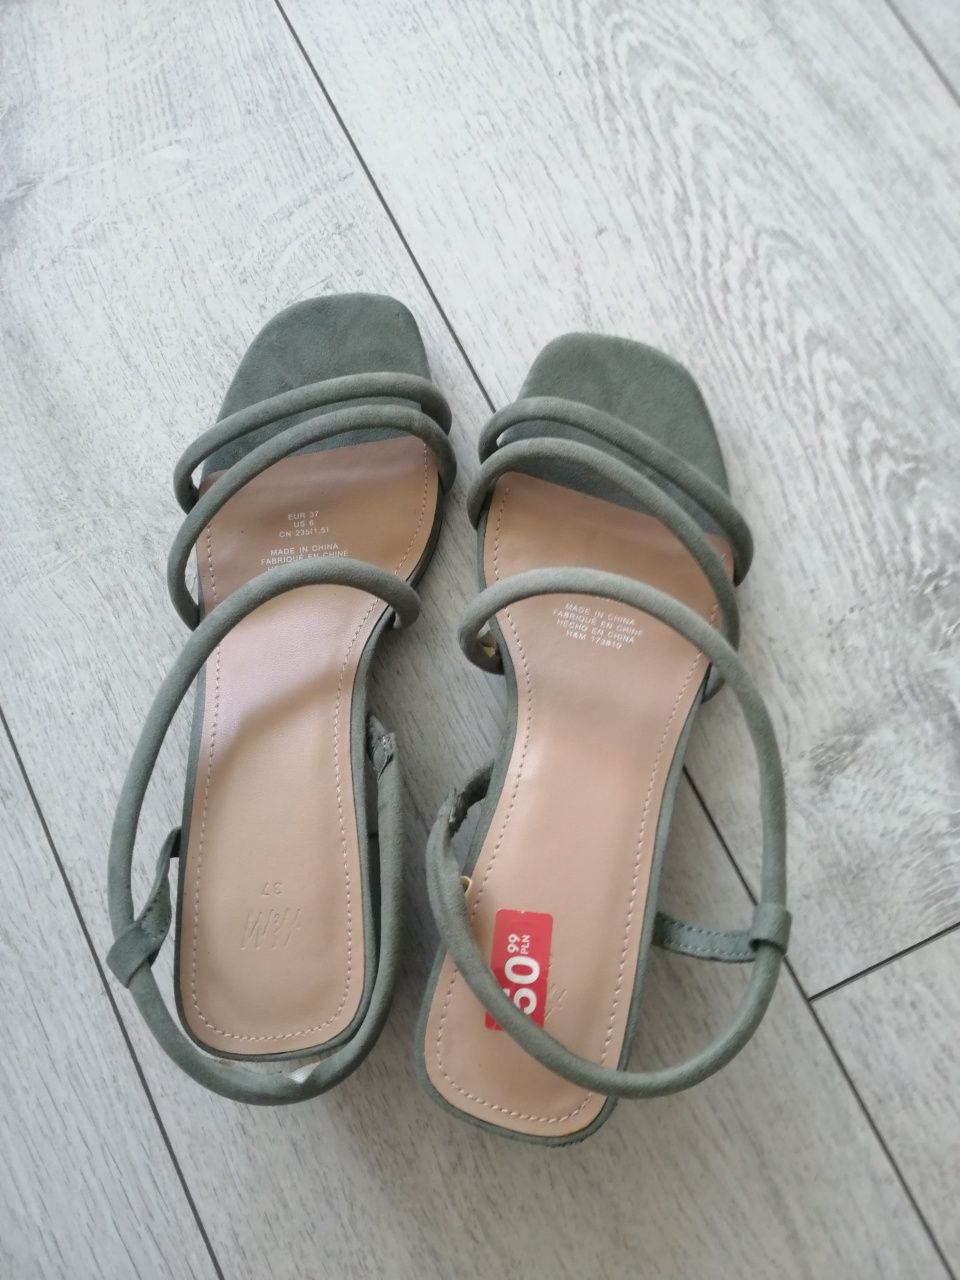 Sandały damskie sandałki buty letnie lato obcas rozmiar 37 HM H&M